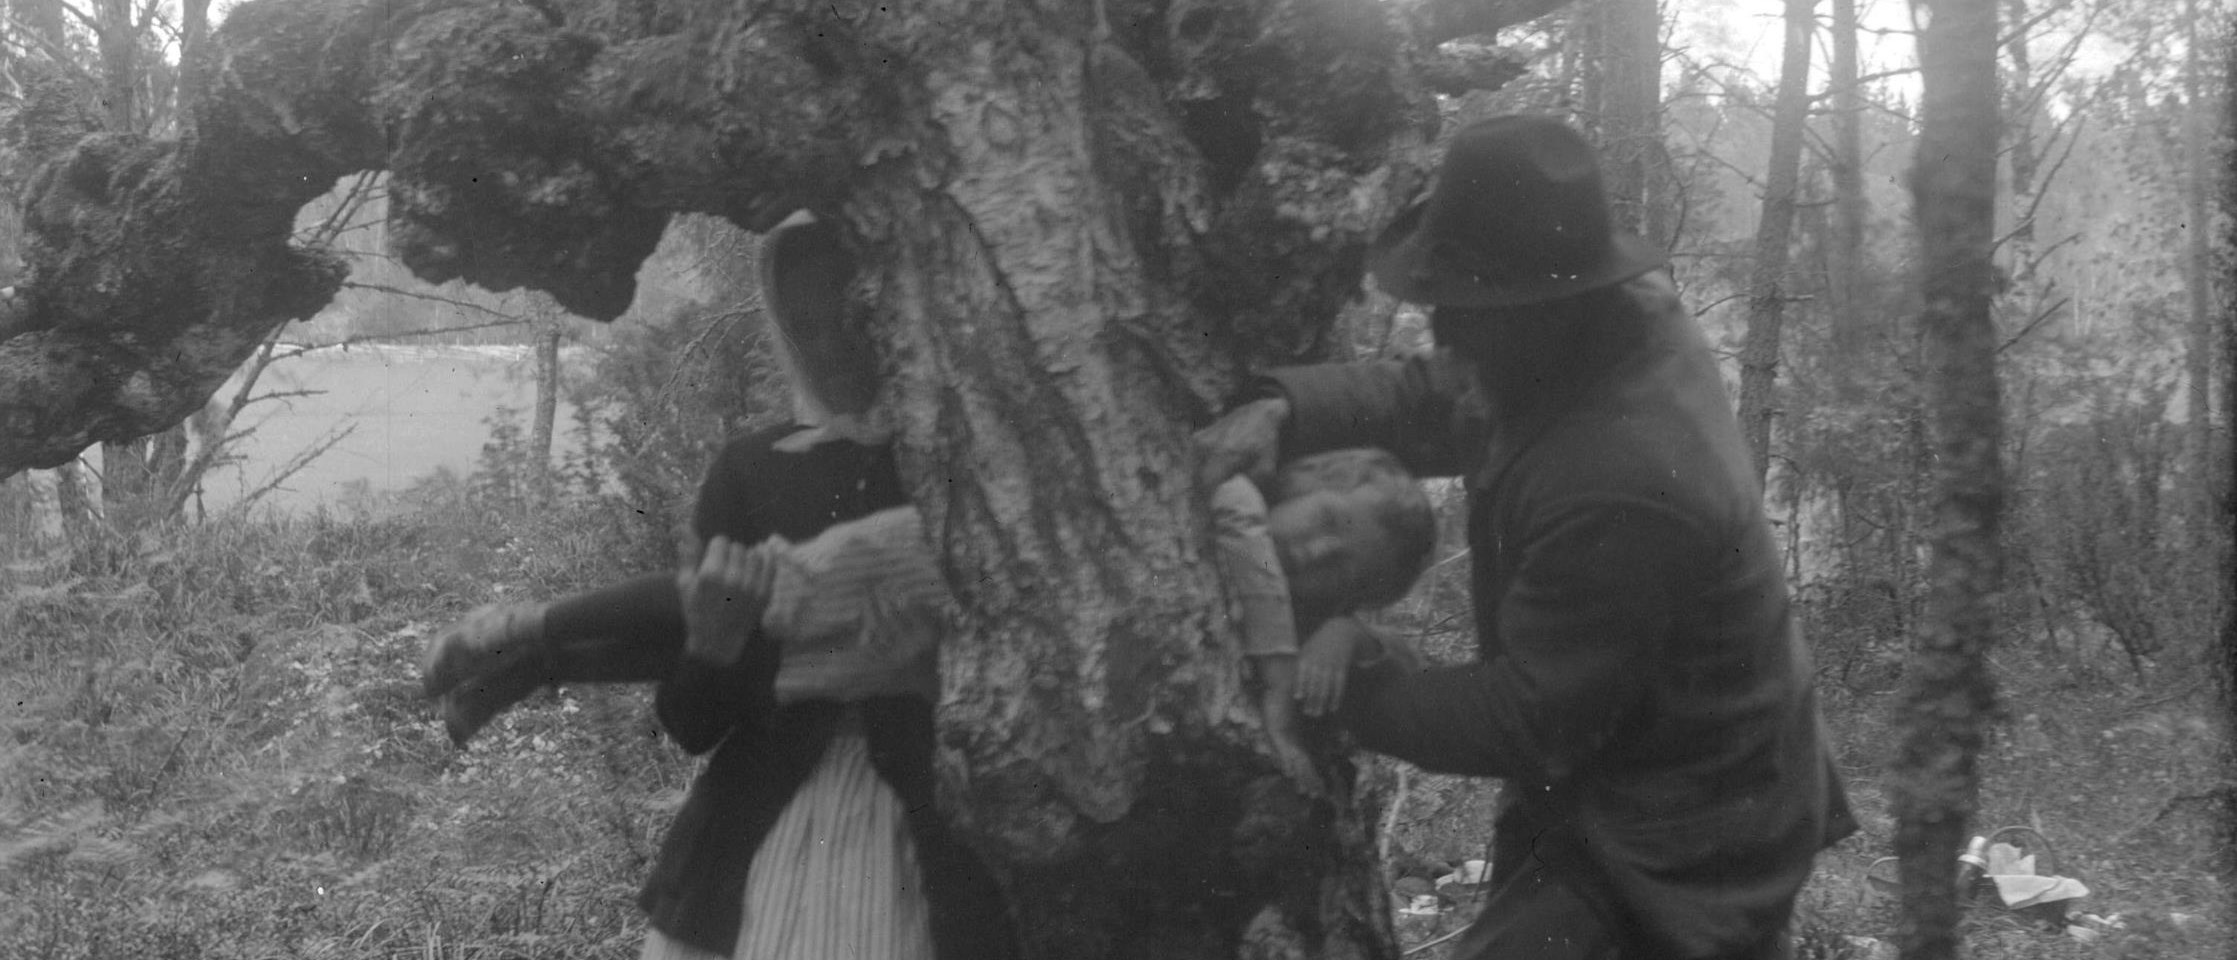 En kvinna och en man för ett barn genom ett hål i ett träd.